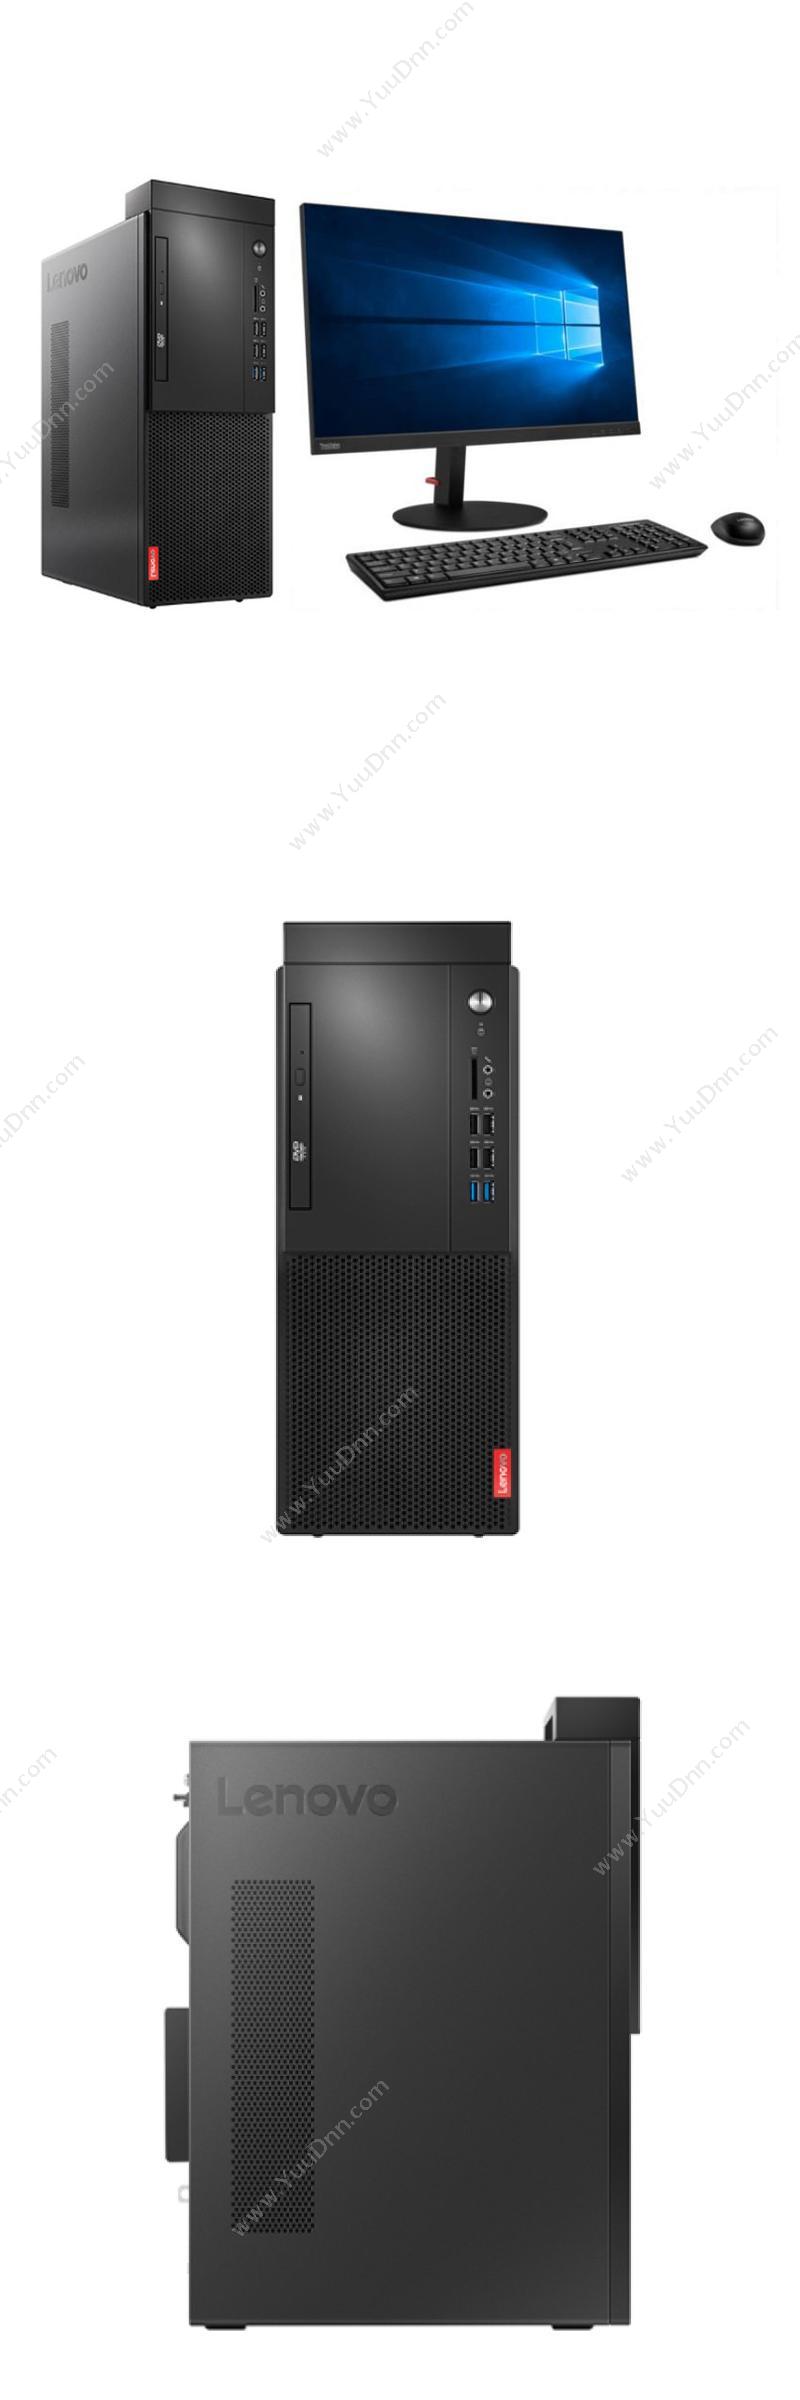 联想 Lenovo 启天M425-D193（21.5显示器） 台式机 台式电脑套机